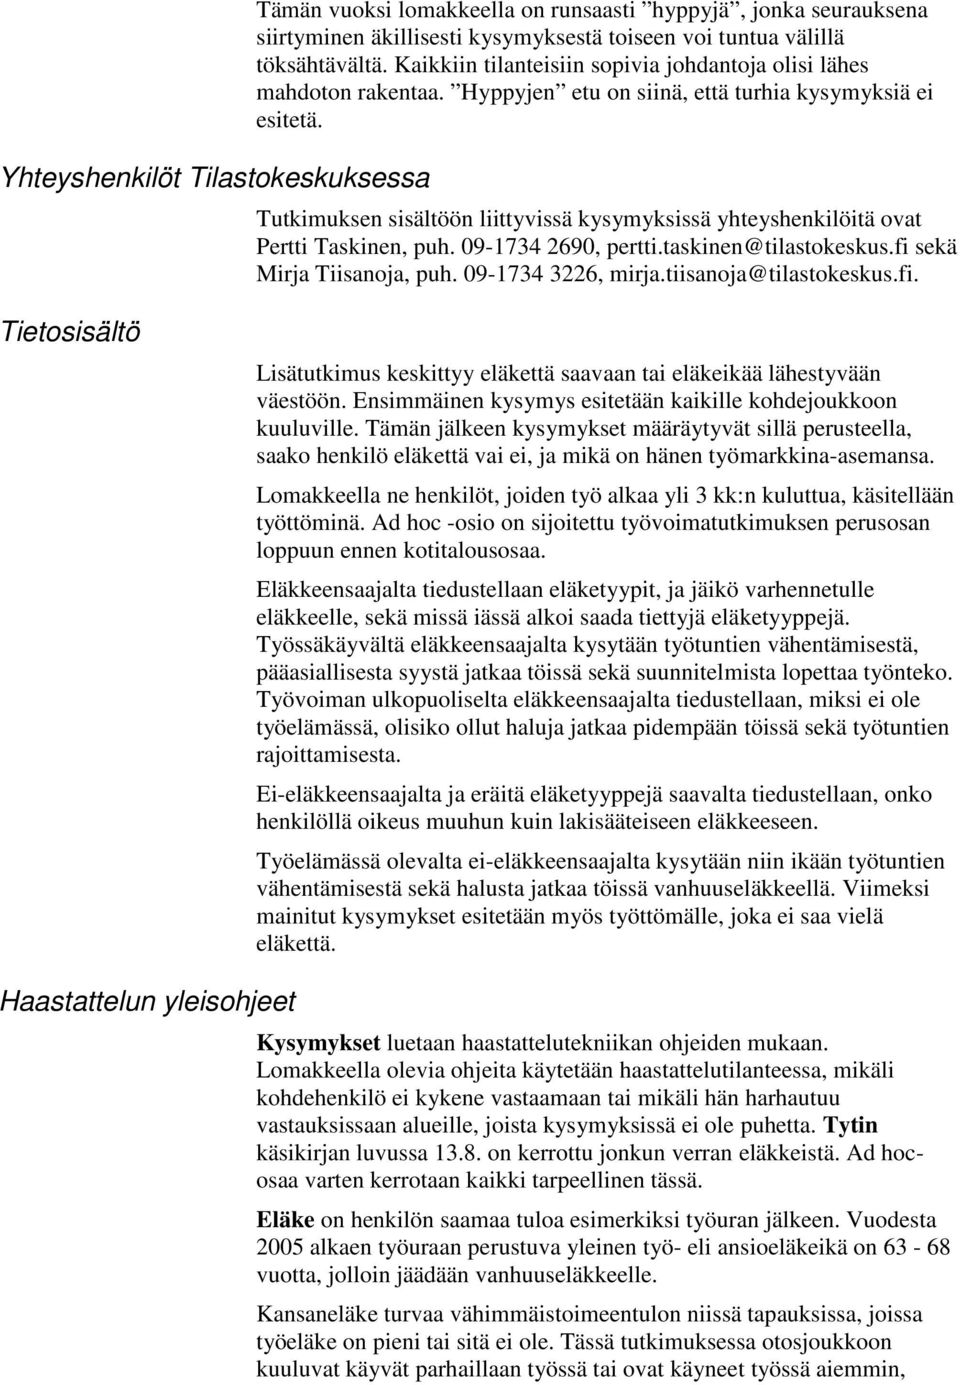 Tutkimuksen sisältöön liittyvissä kysymyksissä yhteyshenkilöitä ovat Pertti Taskinen, puh. 09-1734 2690, pertti.taskinen@tilastokeskus.fi sekä Mirja Tiisanoja, puh. 09-1734 3226, mirja.